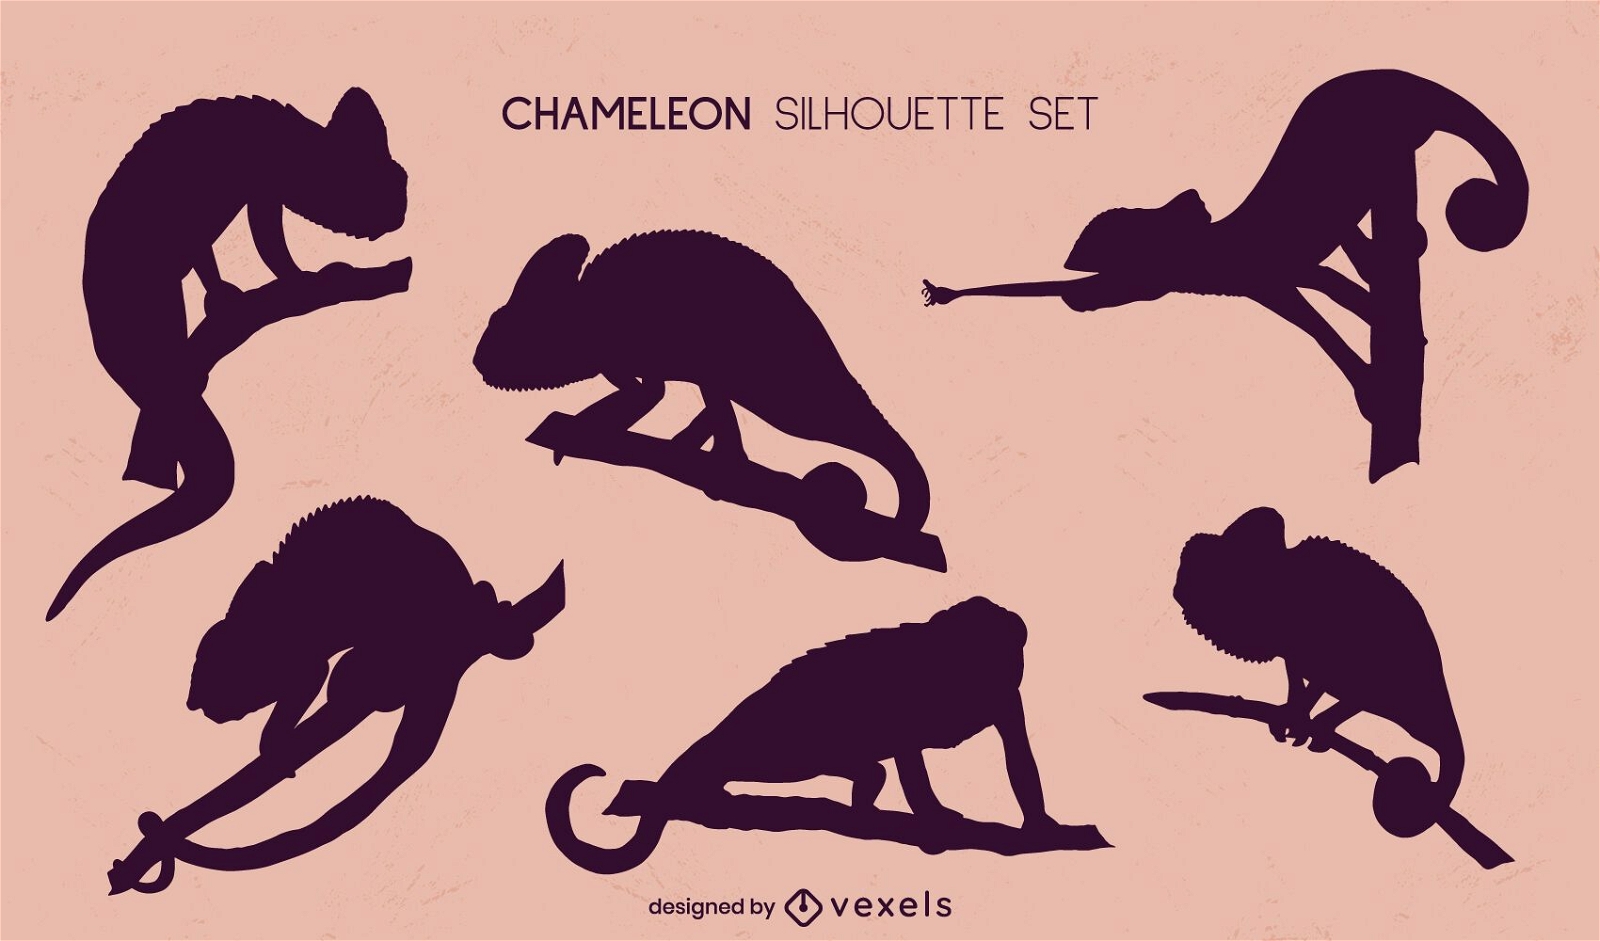 Set of chameleons silhouettes